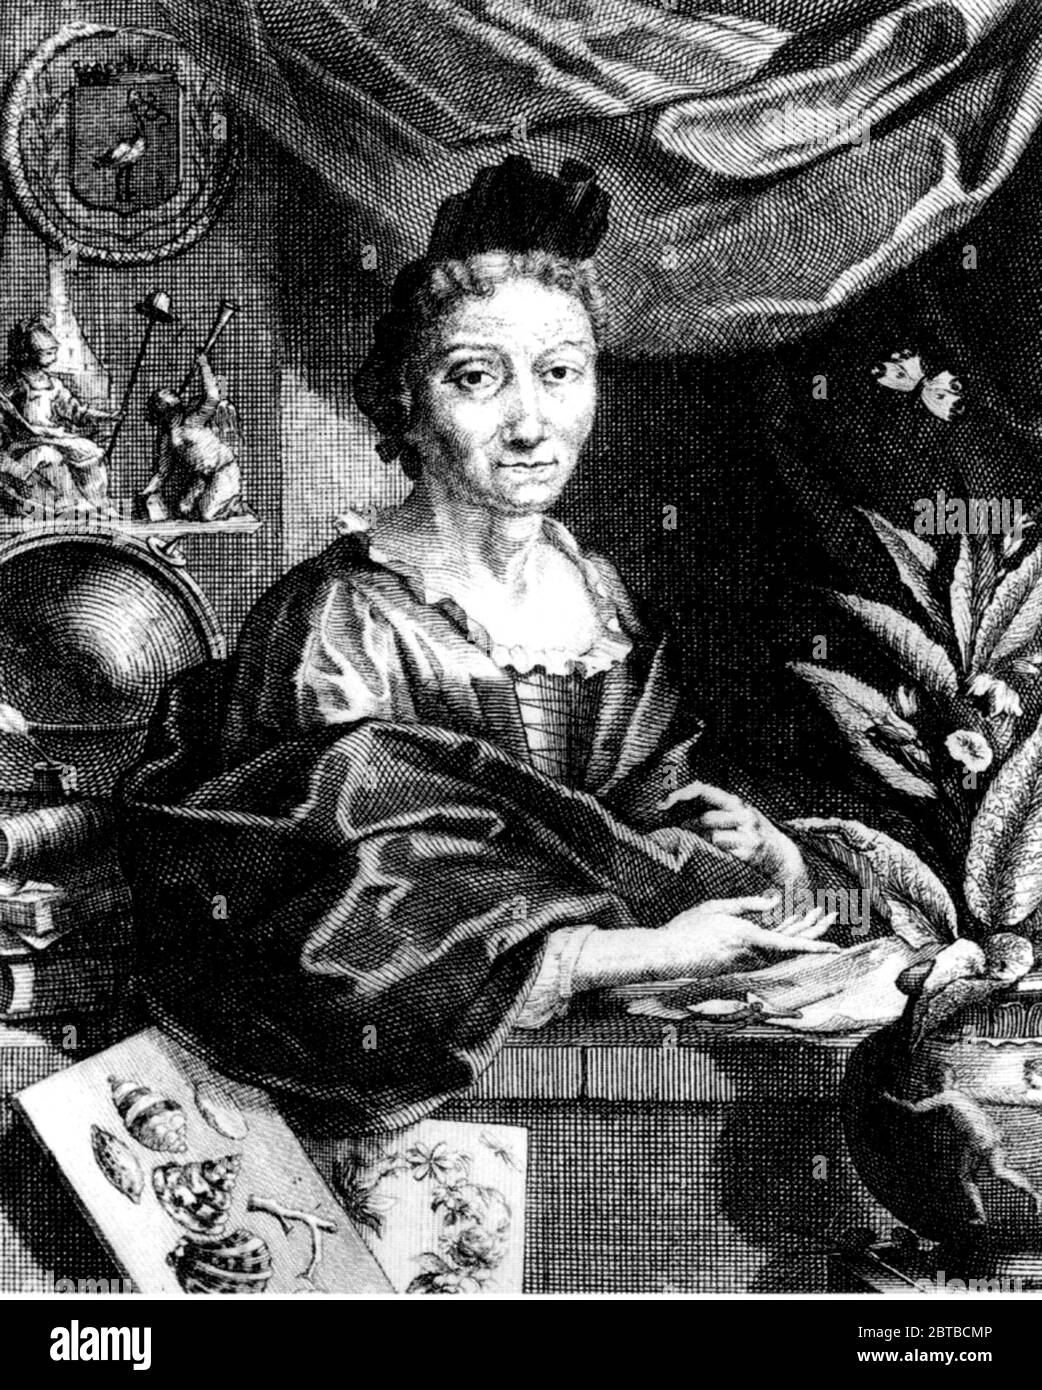 1700 c, ALLEMAGNE : la femme naturaliste allemande peintre , illustratrice scientifique et biologiste MARIA SIBYLLA MERIAN ( 1647 - 1717 ). Le père de Sybylla était le graveur et pubbliher suisse Mattäus Merian ( Matthew , 1593 - 1650 ) l'aîné . Portrait du graveur Jacobus Houbraken d'un portrait de Georg Gsell . - SYBILLA - HISTOIRE - foto storica storiche - portrait - ritratto - NATURALISTA - NATURALISTE - SCIENZA - SCIENCE - BIOLOGIE - BIOLOGIA - illustratrice - illustrateur - femme peintre - pittrice - pittura - peinture - ARTE - ARTS - ART - illustration - illustrazione - incision Banque D'Images